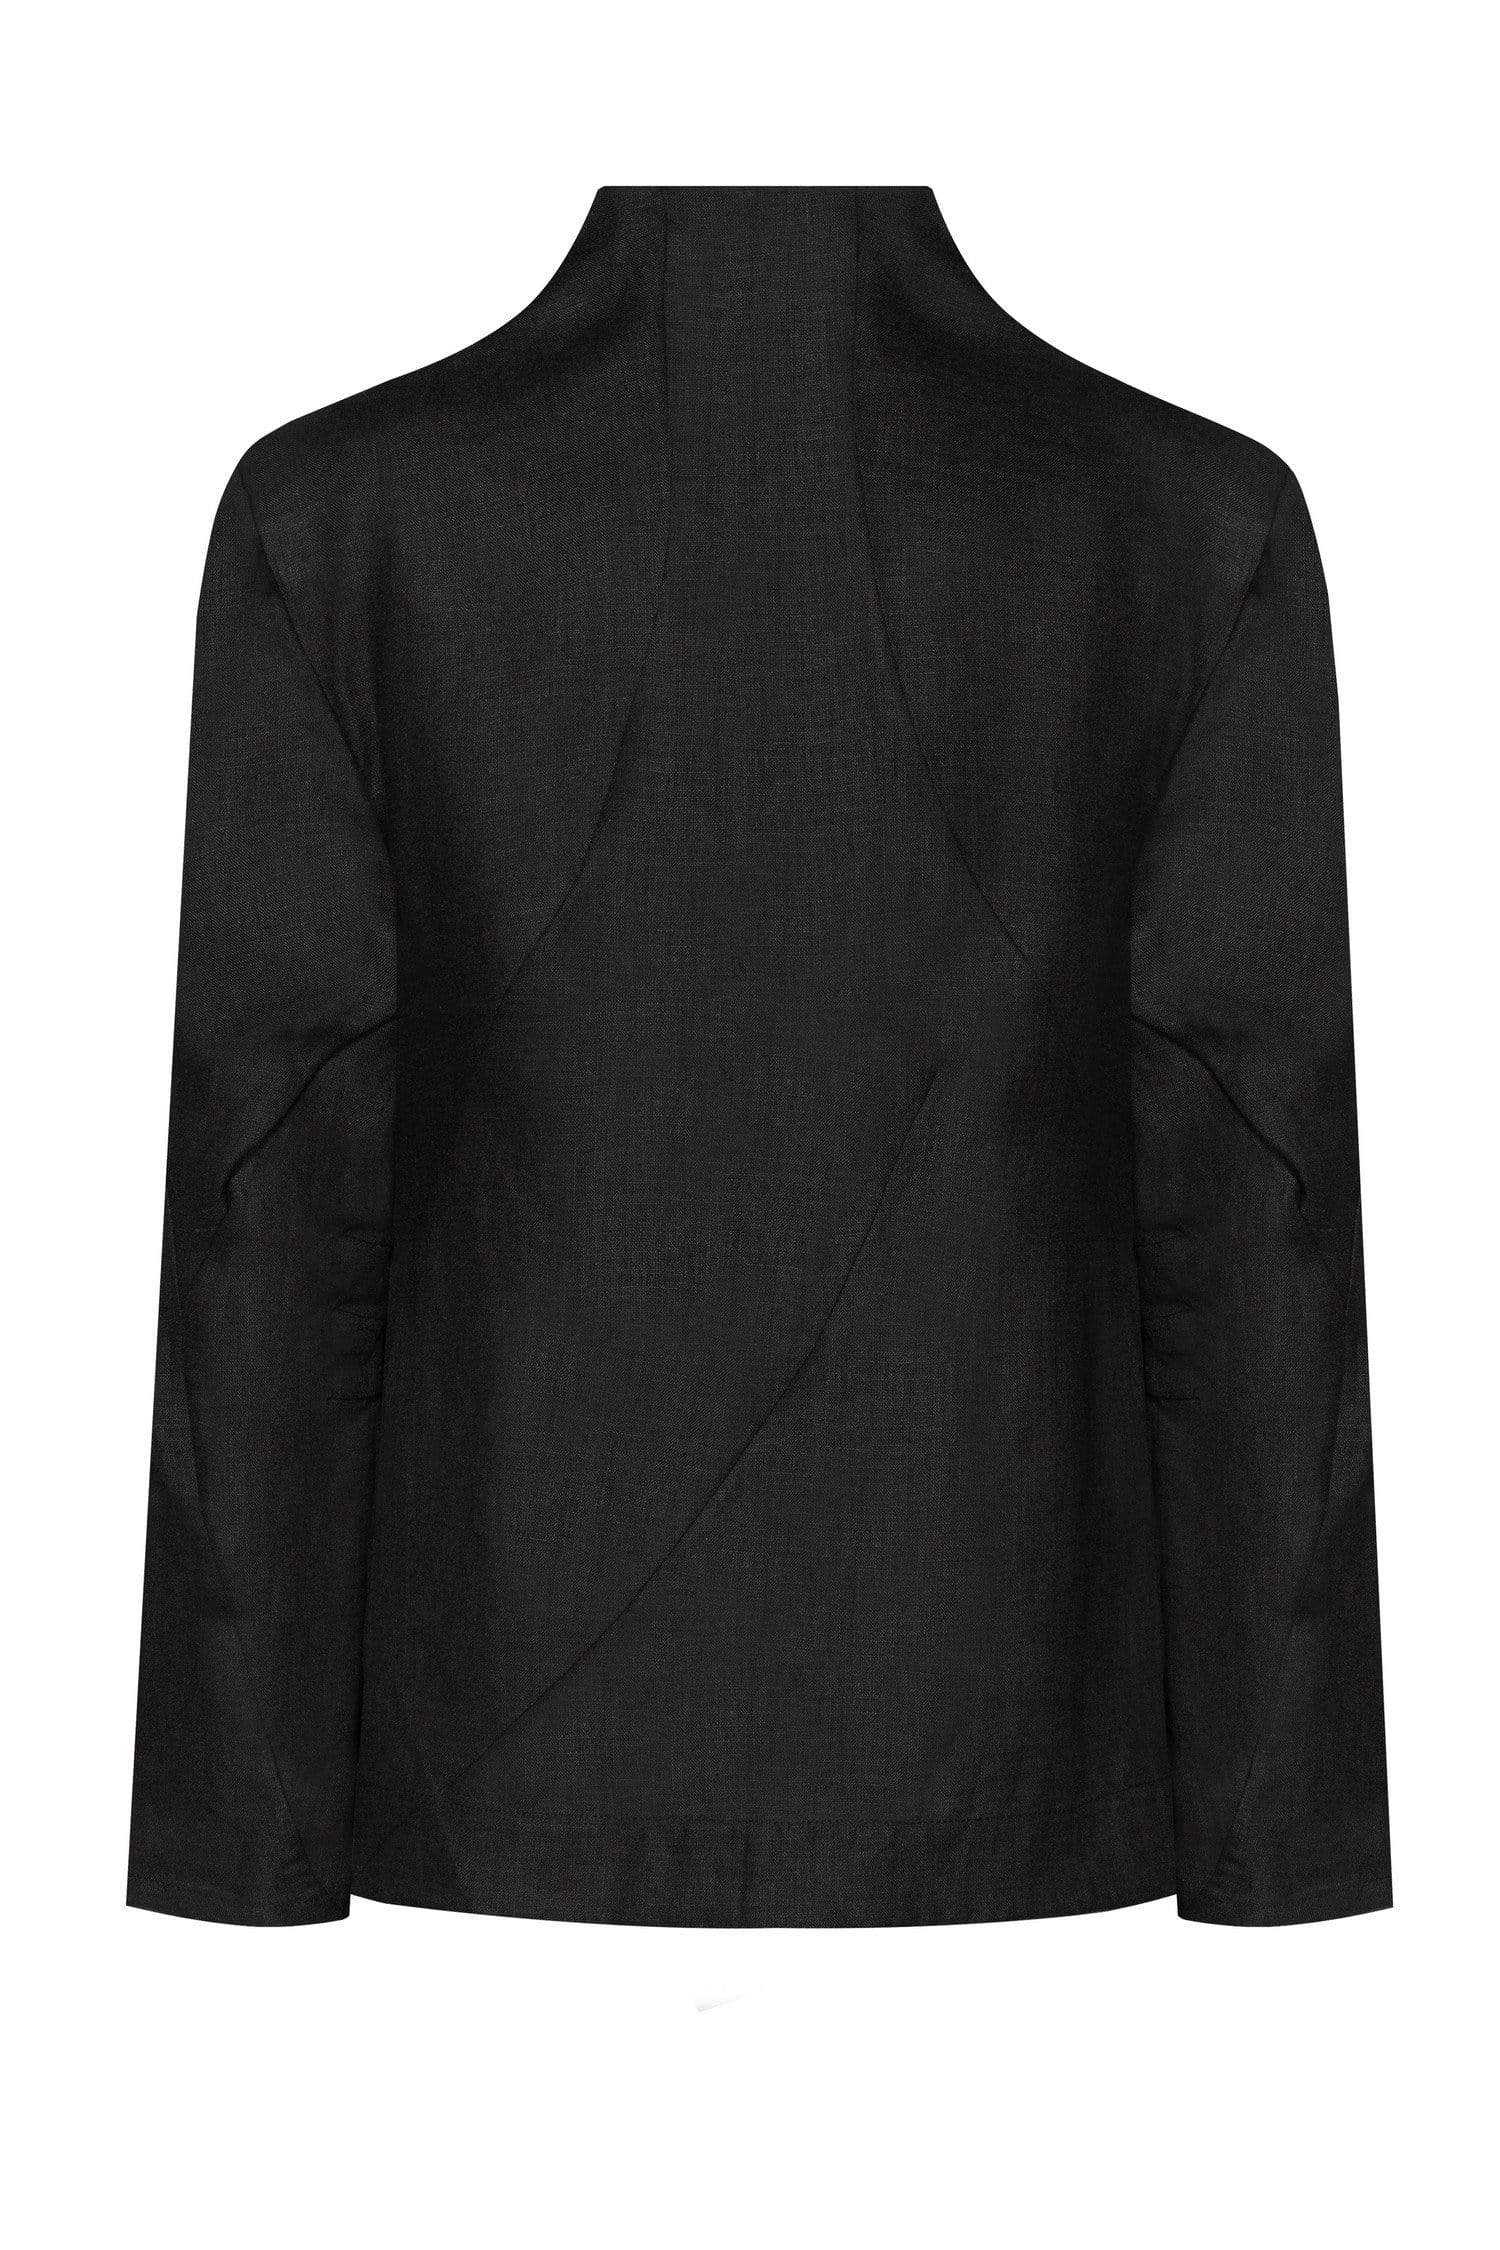 Reberu jacket Black – MDNT45 | mdnt45.com